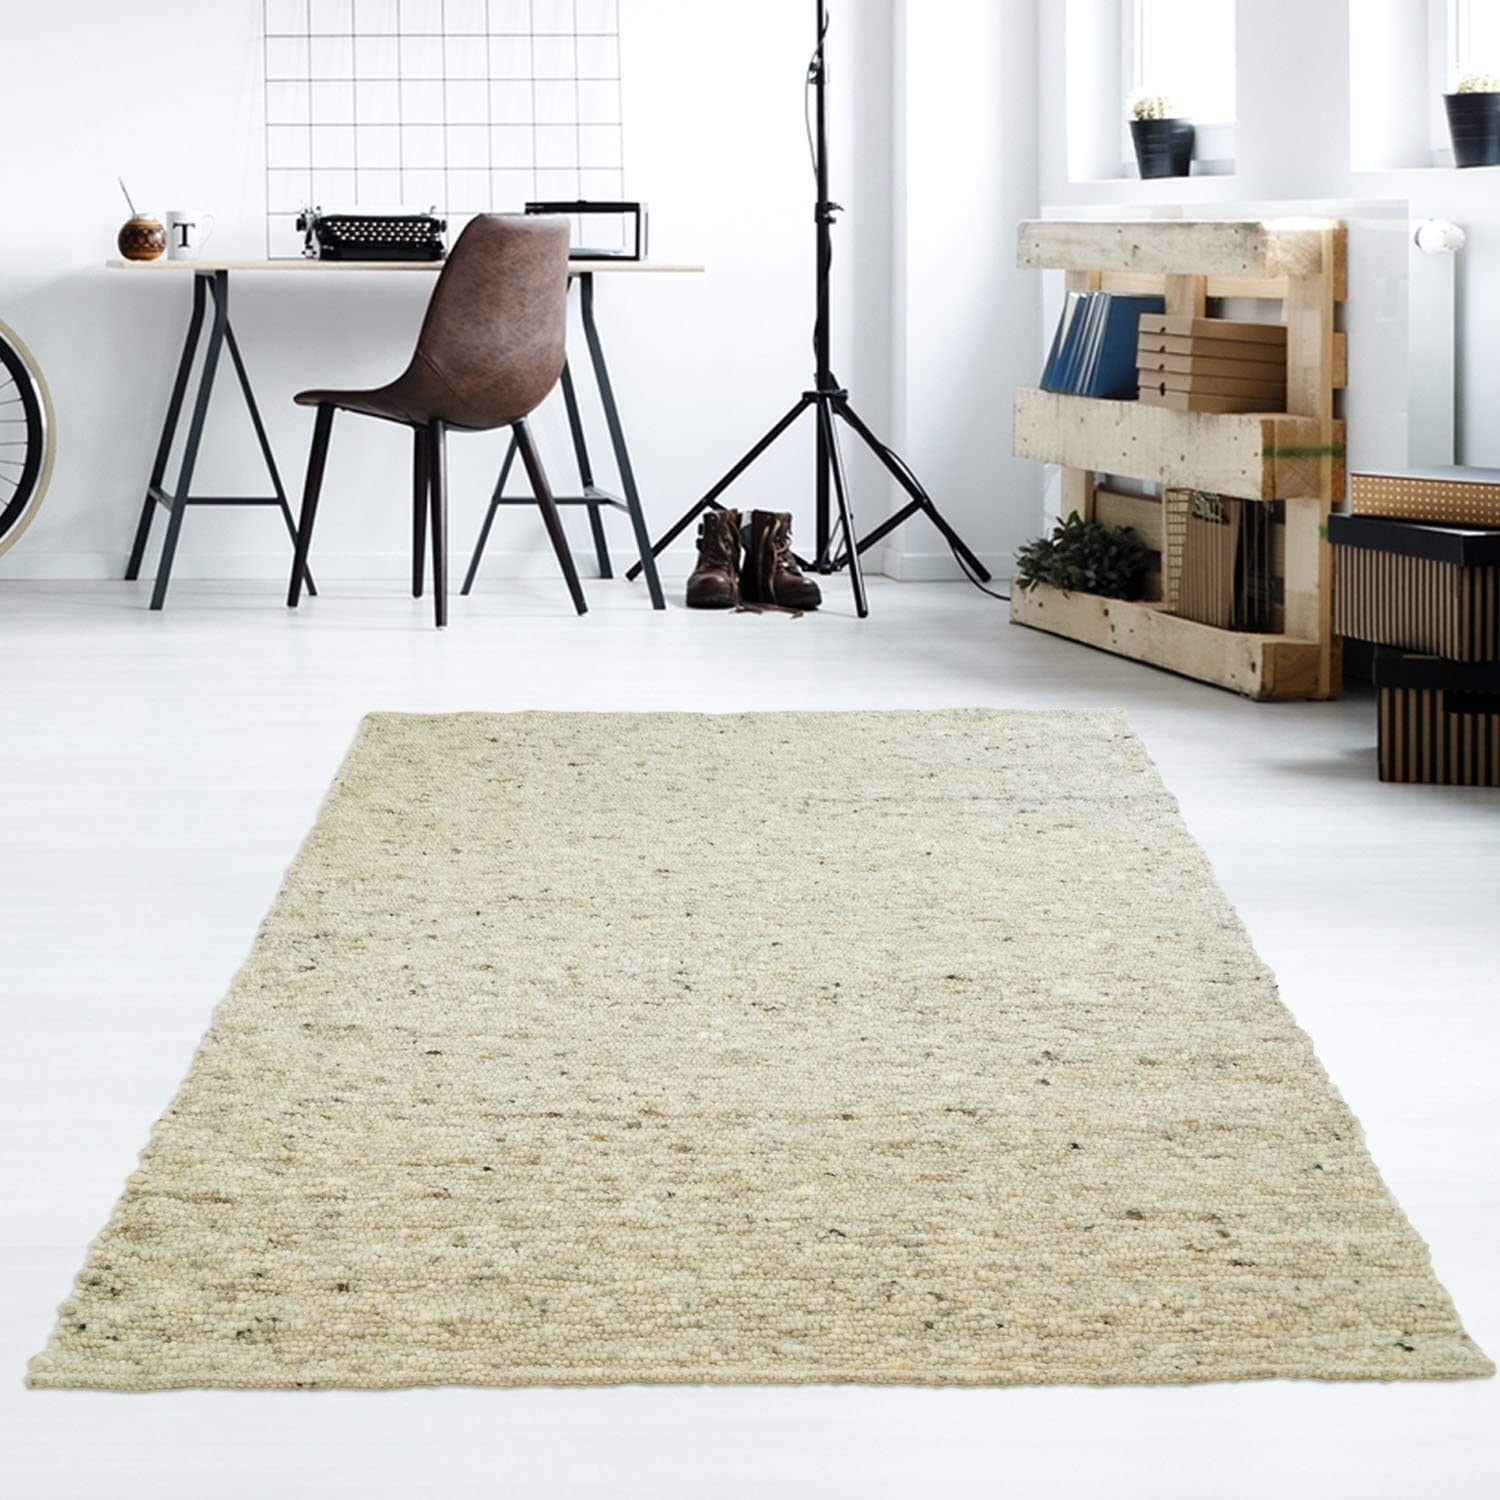 Taracarpet Moderner Handweb Teppich Alpina handgewebt aus Schurwolle für Wohnzimmer, Esszimmer, Schlafzimmer und die Küche geeignet (130 x 190 cm, 63 Grau Beige meliert)